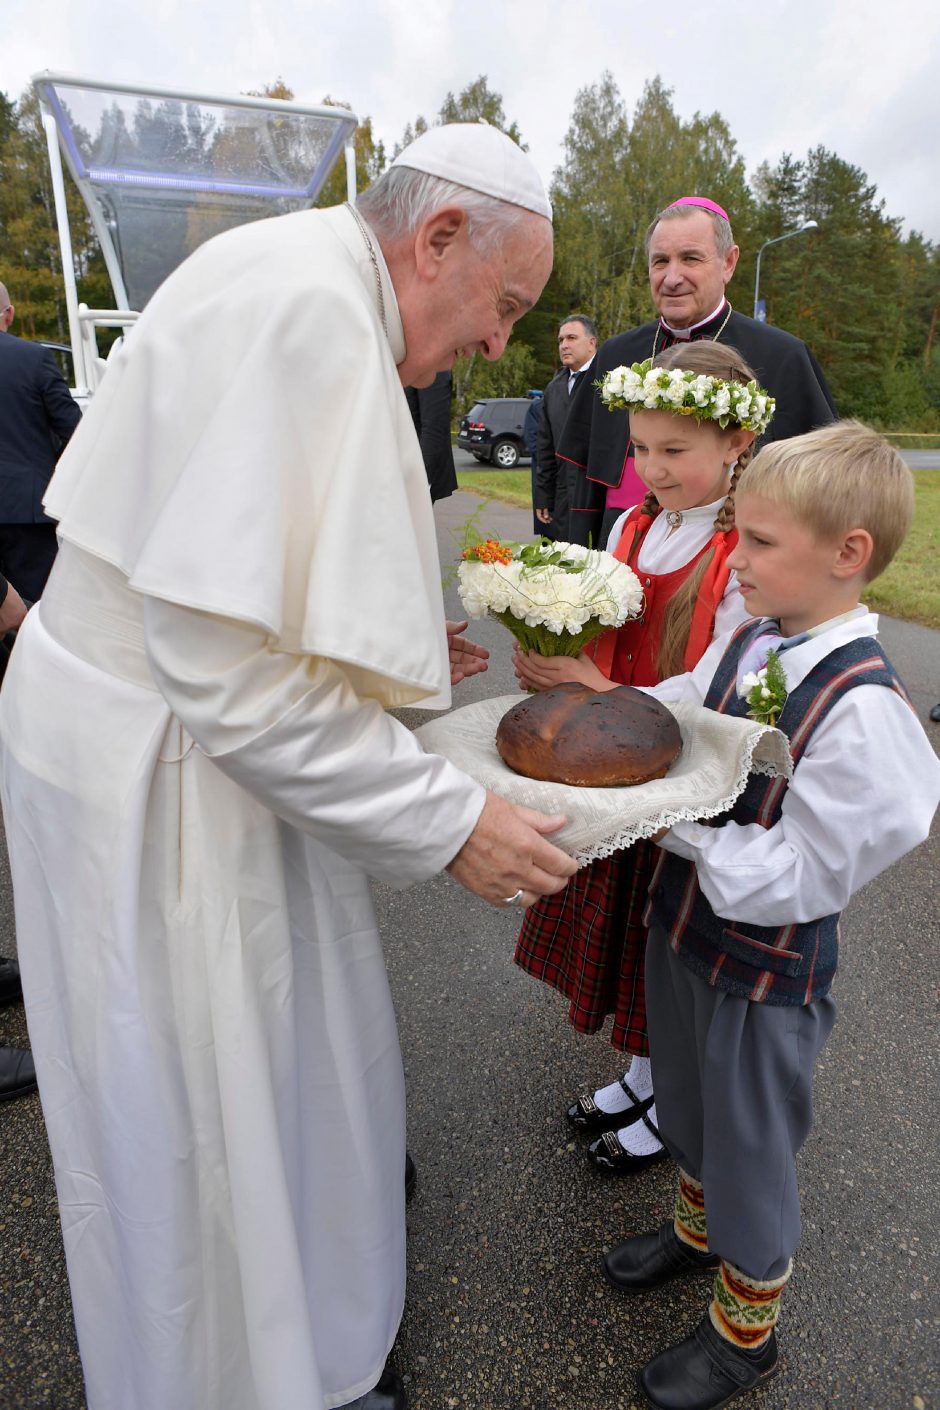 Popiežiaus vizitas Latvijoje